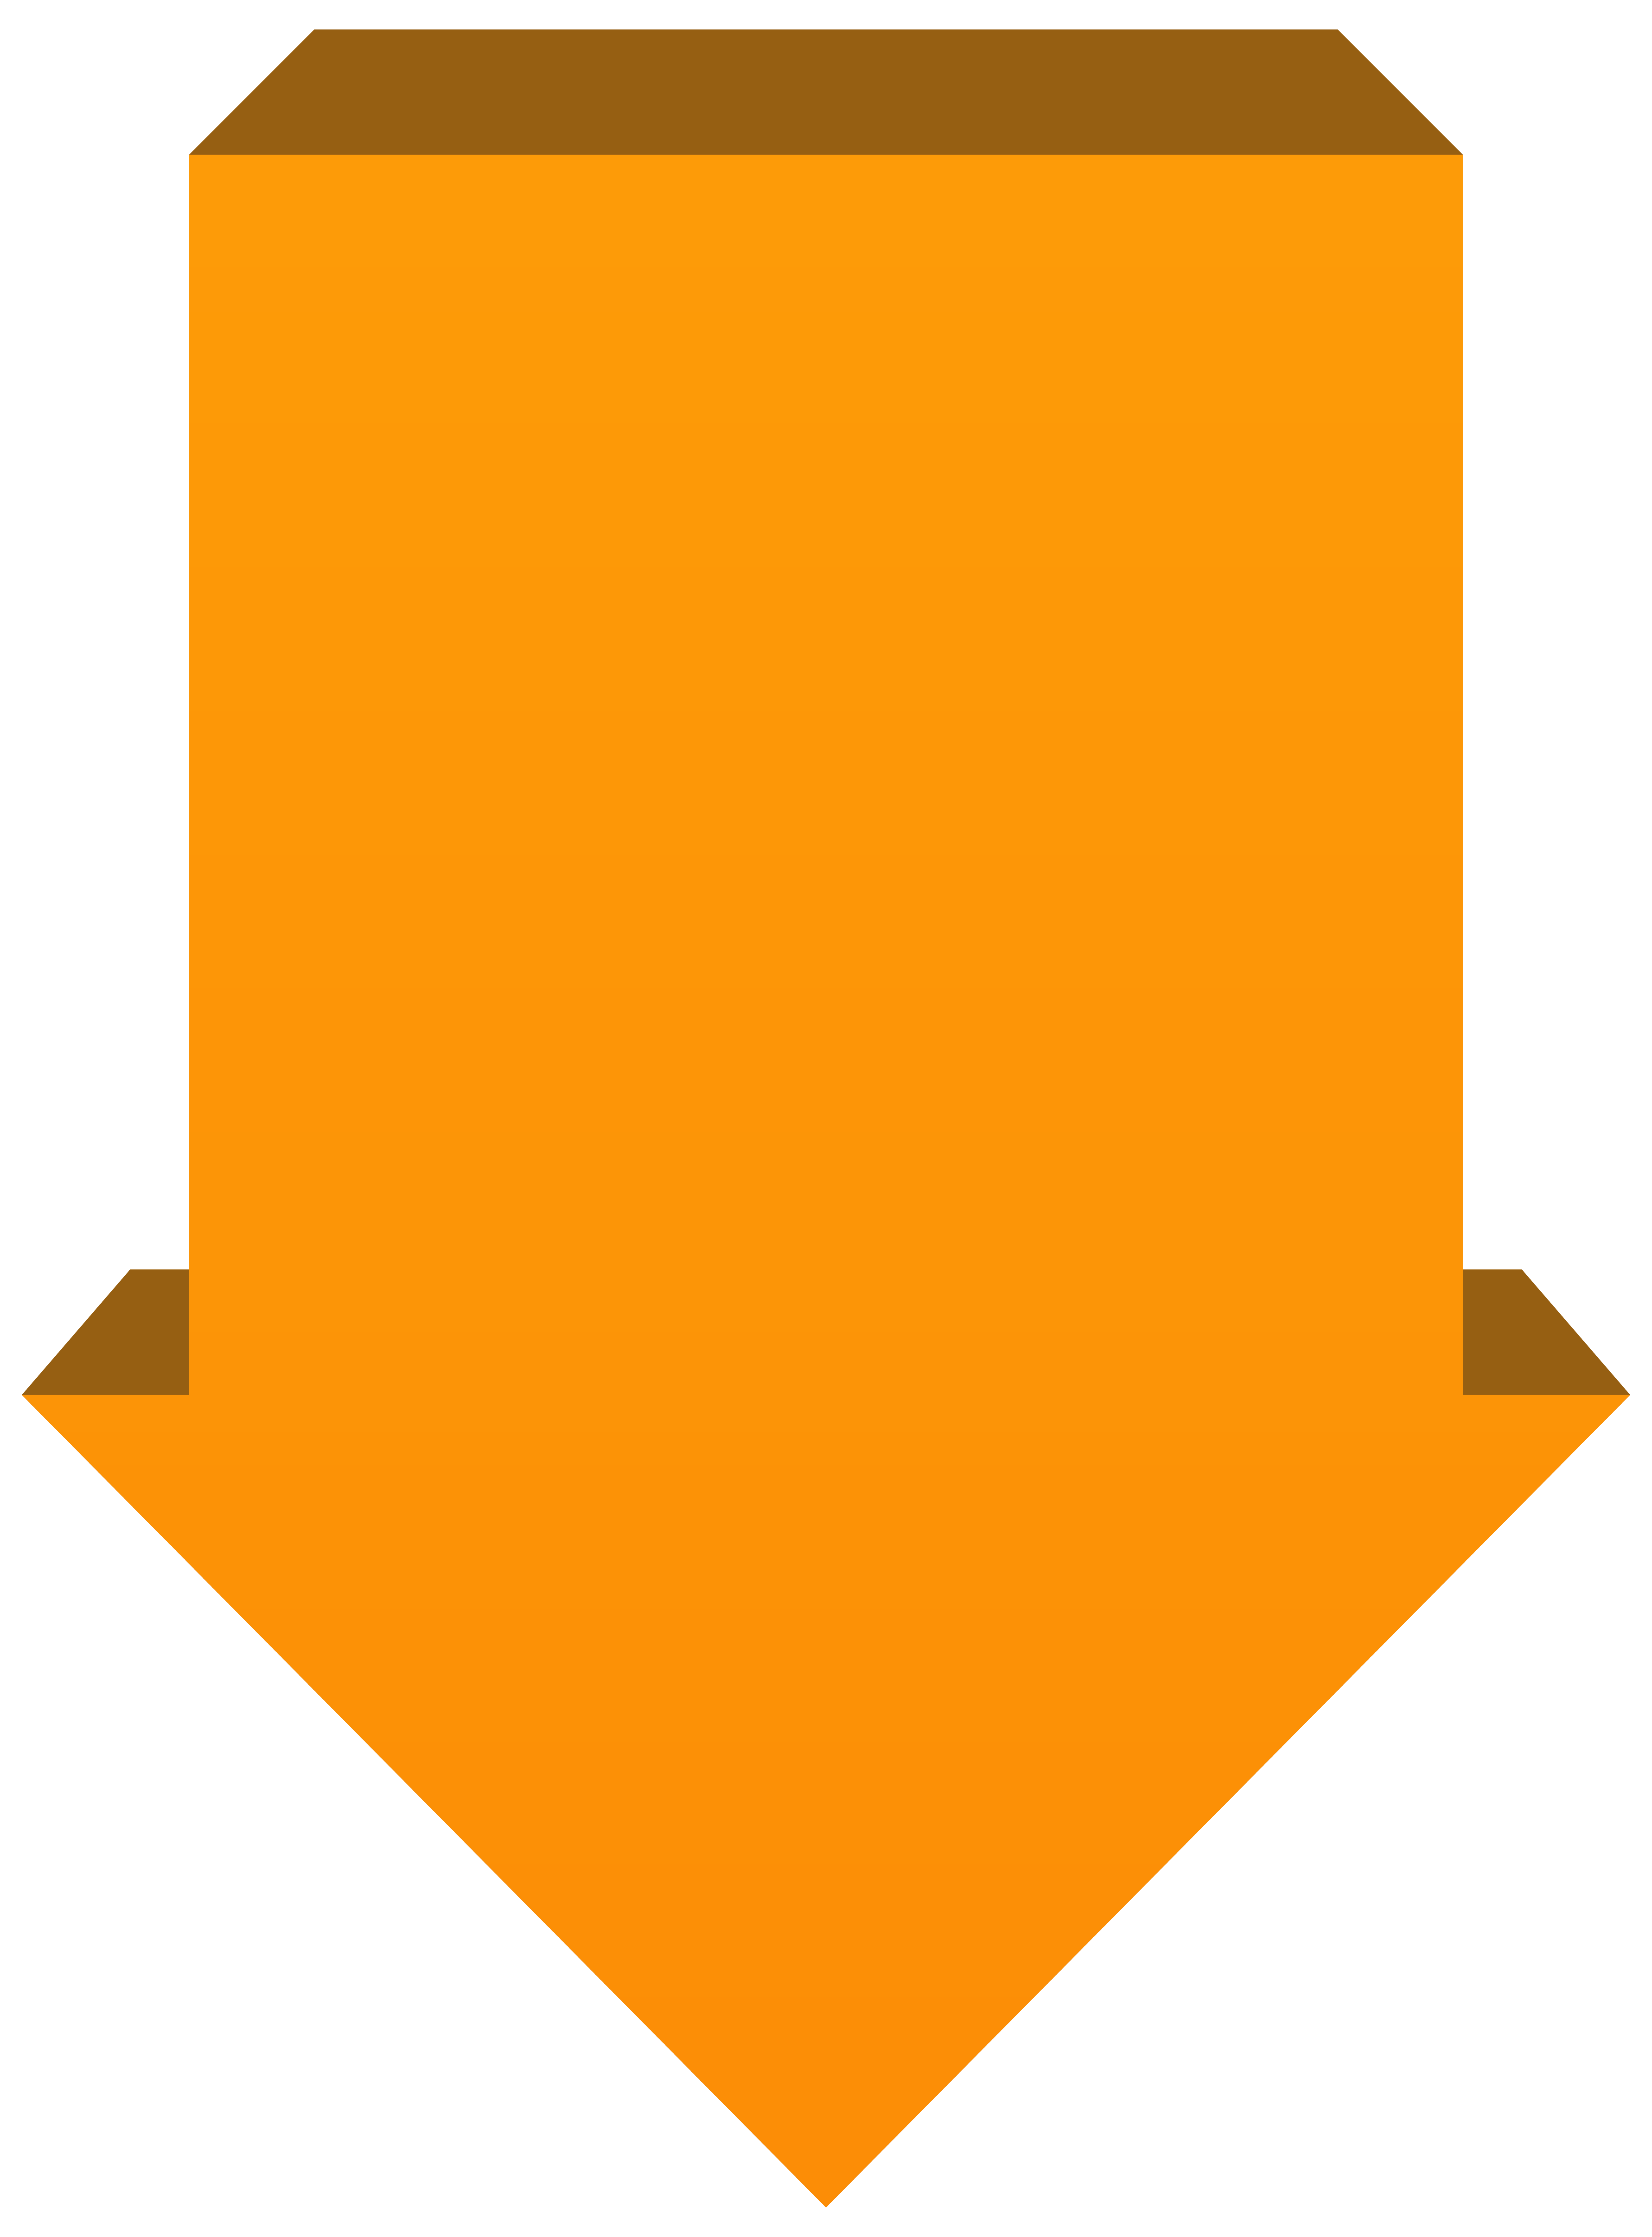 Orange Arrow Down PNG Transparent Clip Art Image 